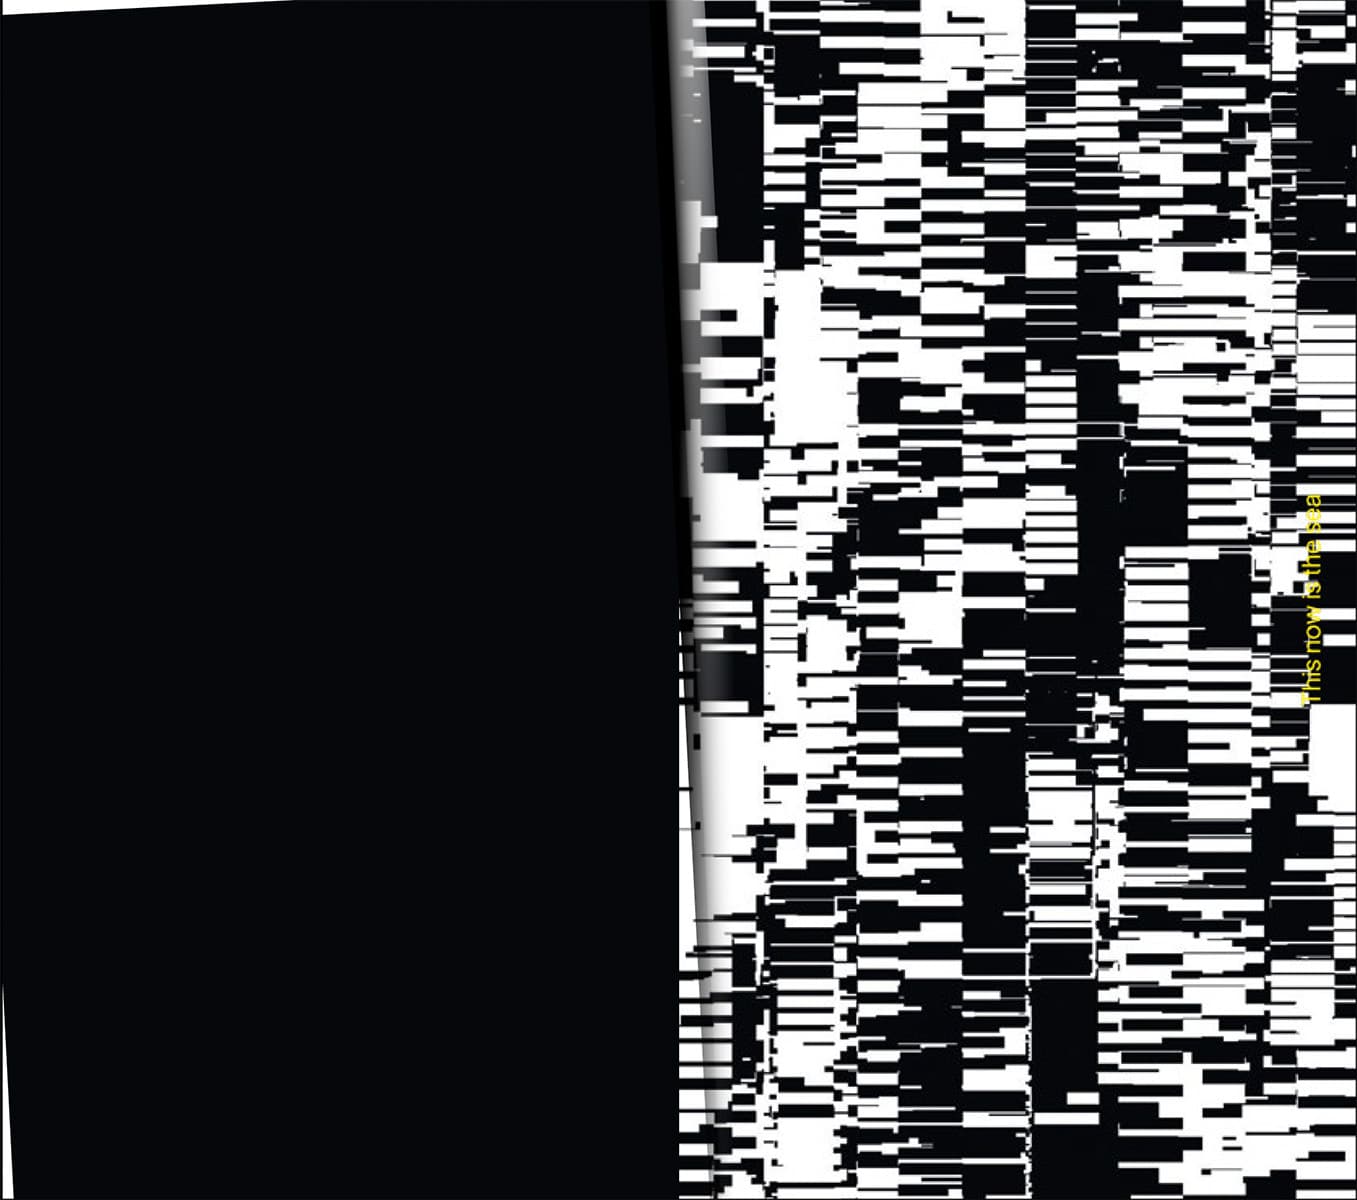 Links: schwarze Seite, rechts Pattern aus schwarz-weißen Klitsches